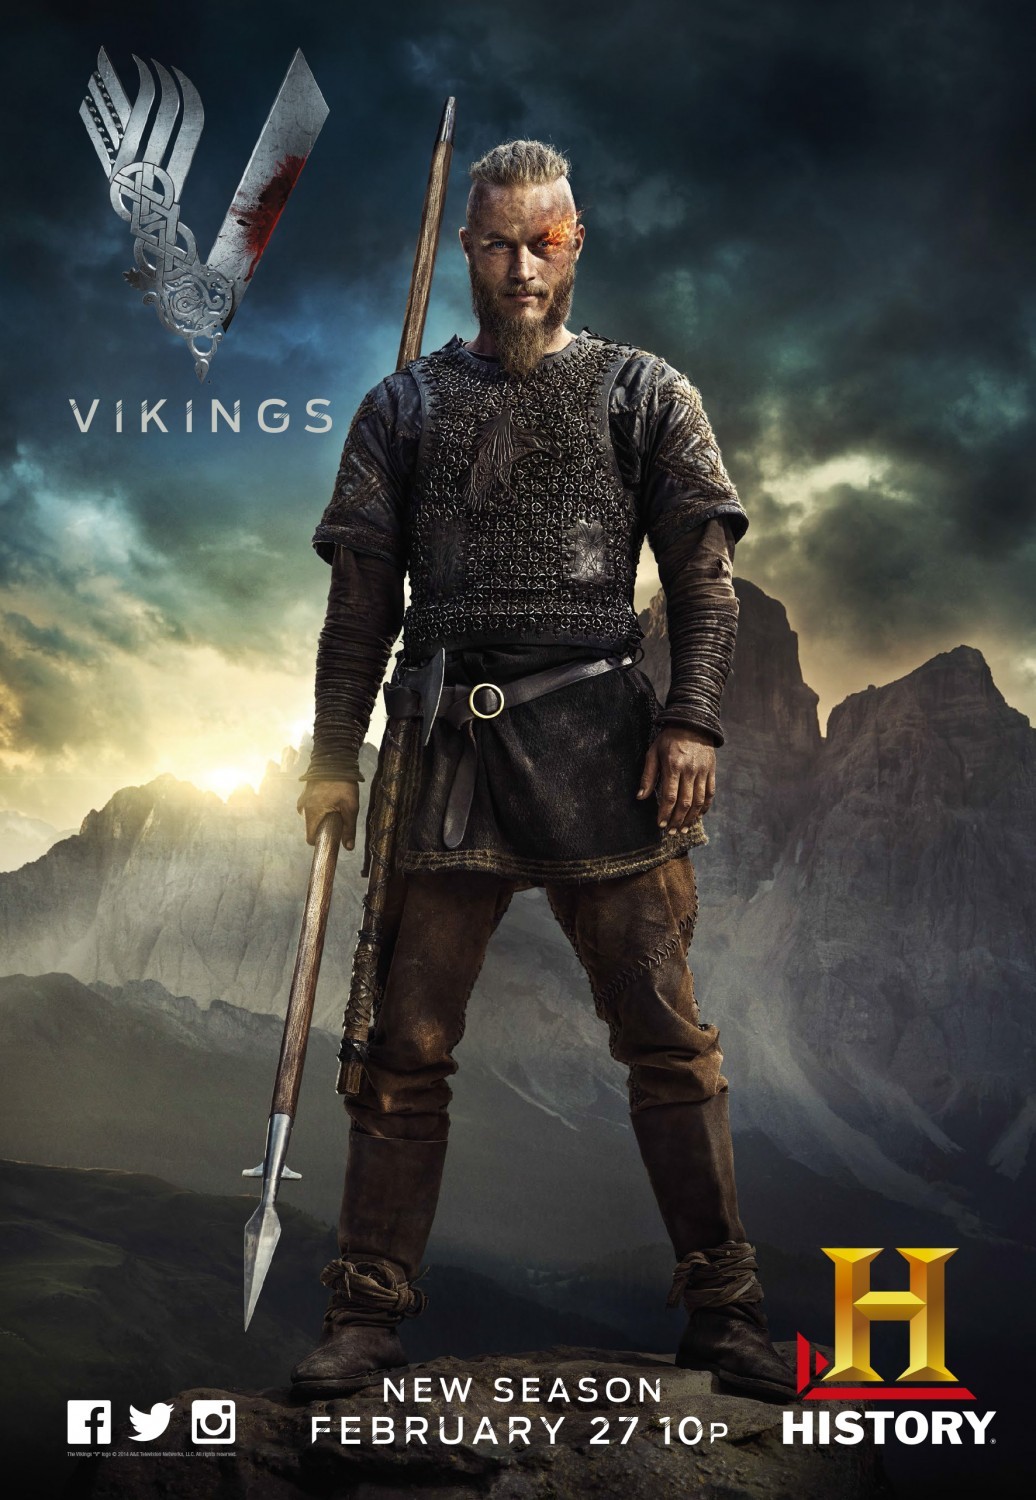 ragnar vikings season 2